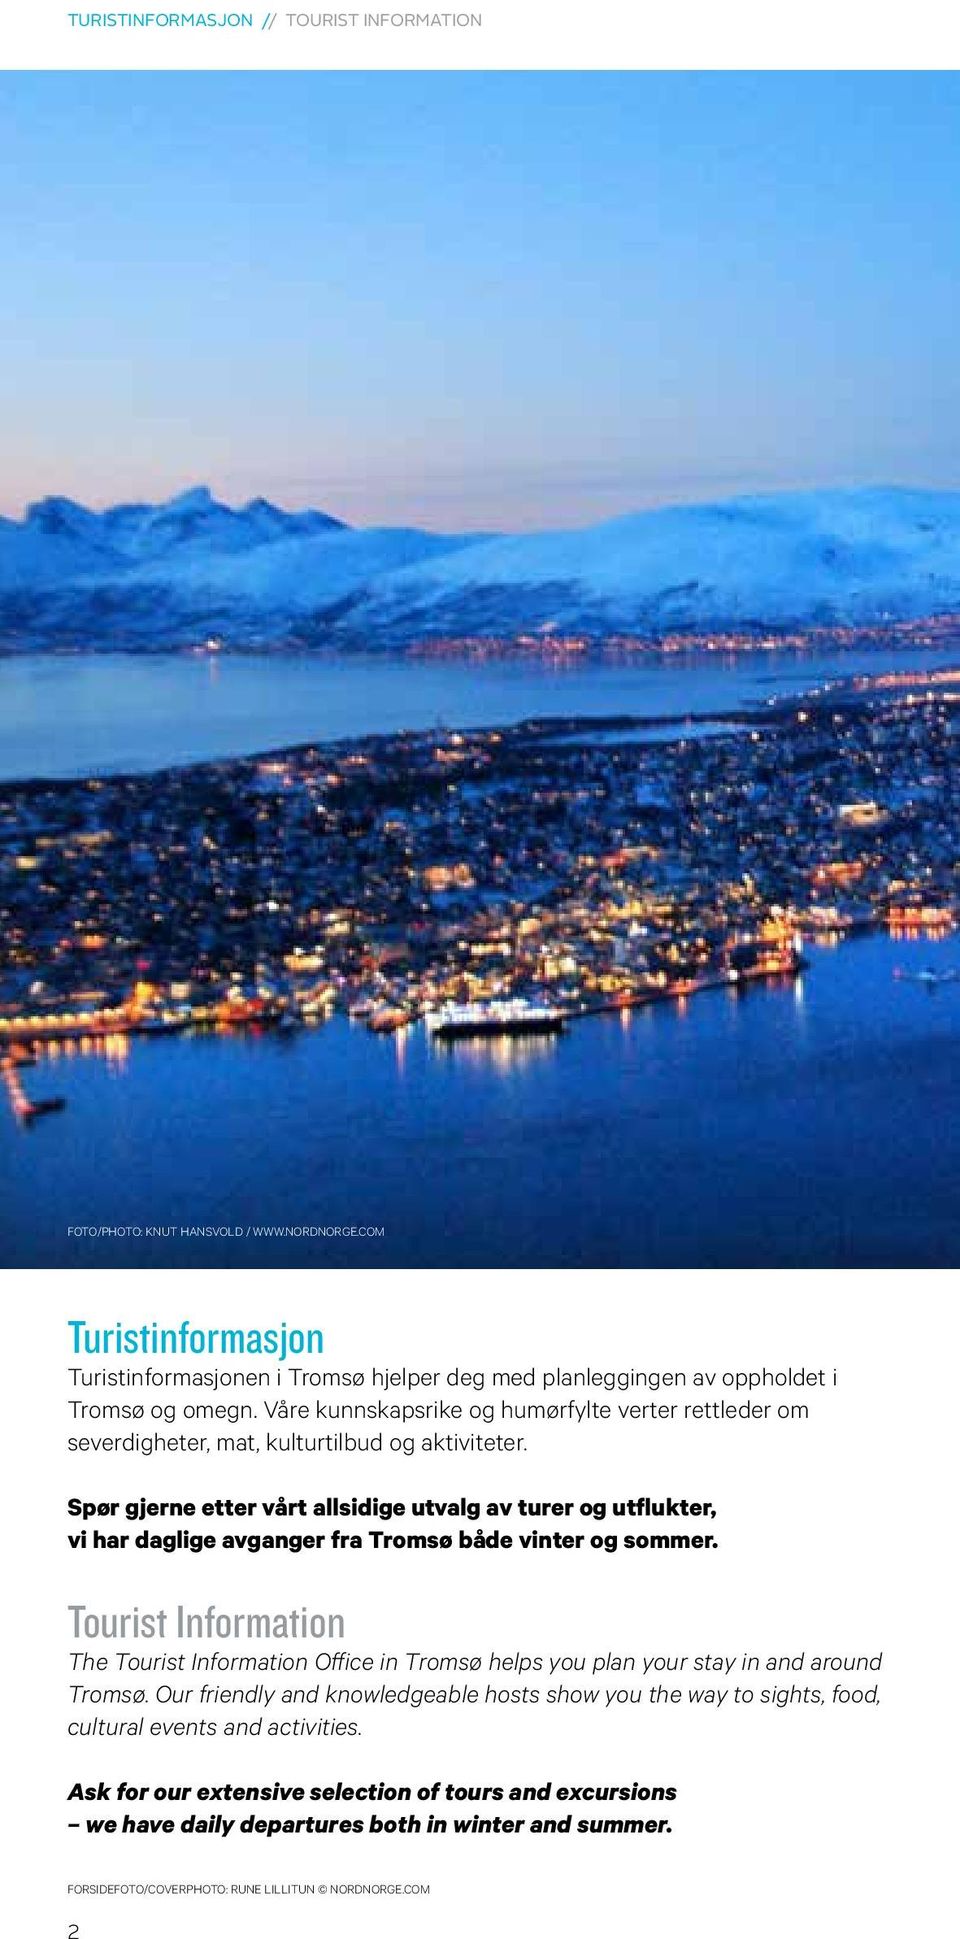 Spør gjerne etter vårt allsidige utvalg av turer og utflukter, vi har daglige avganger fra Tromsø både vinter og sommer.